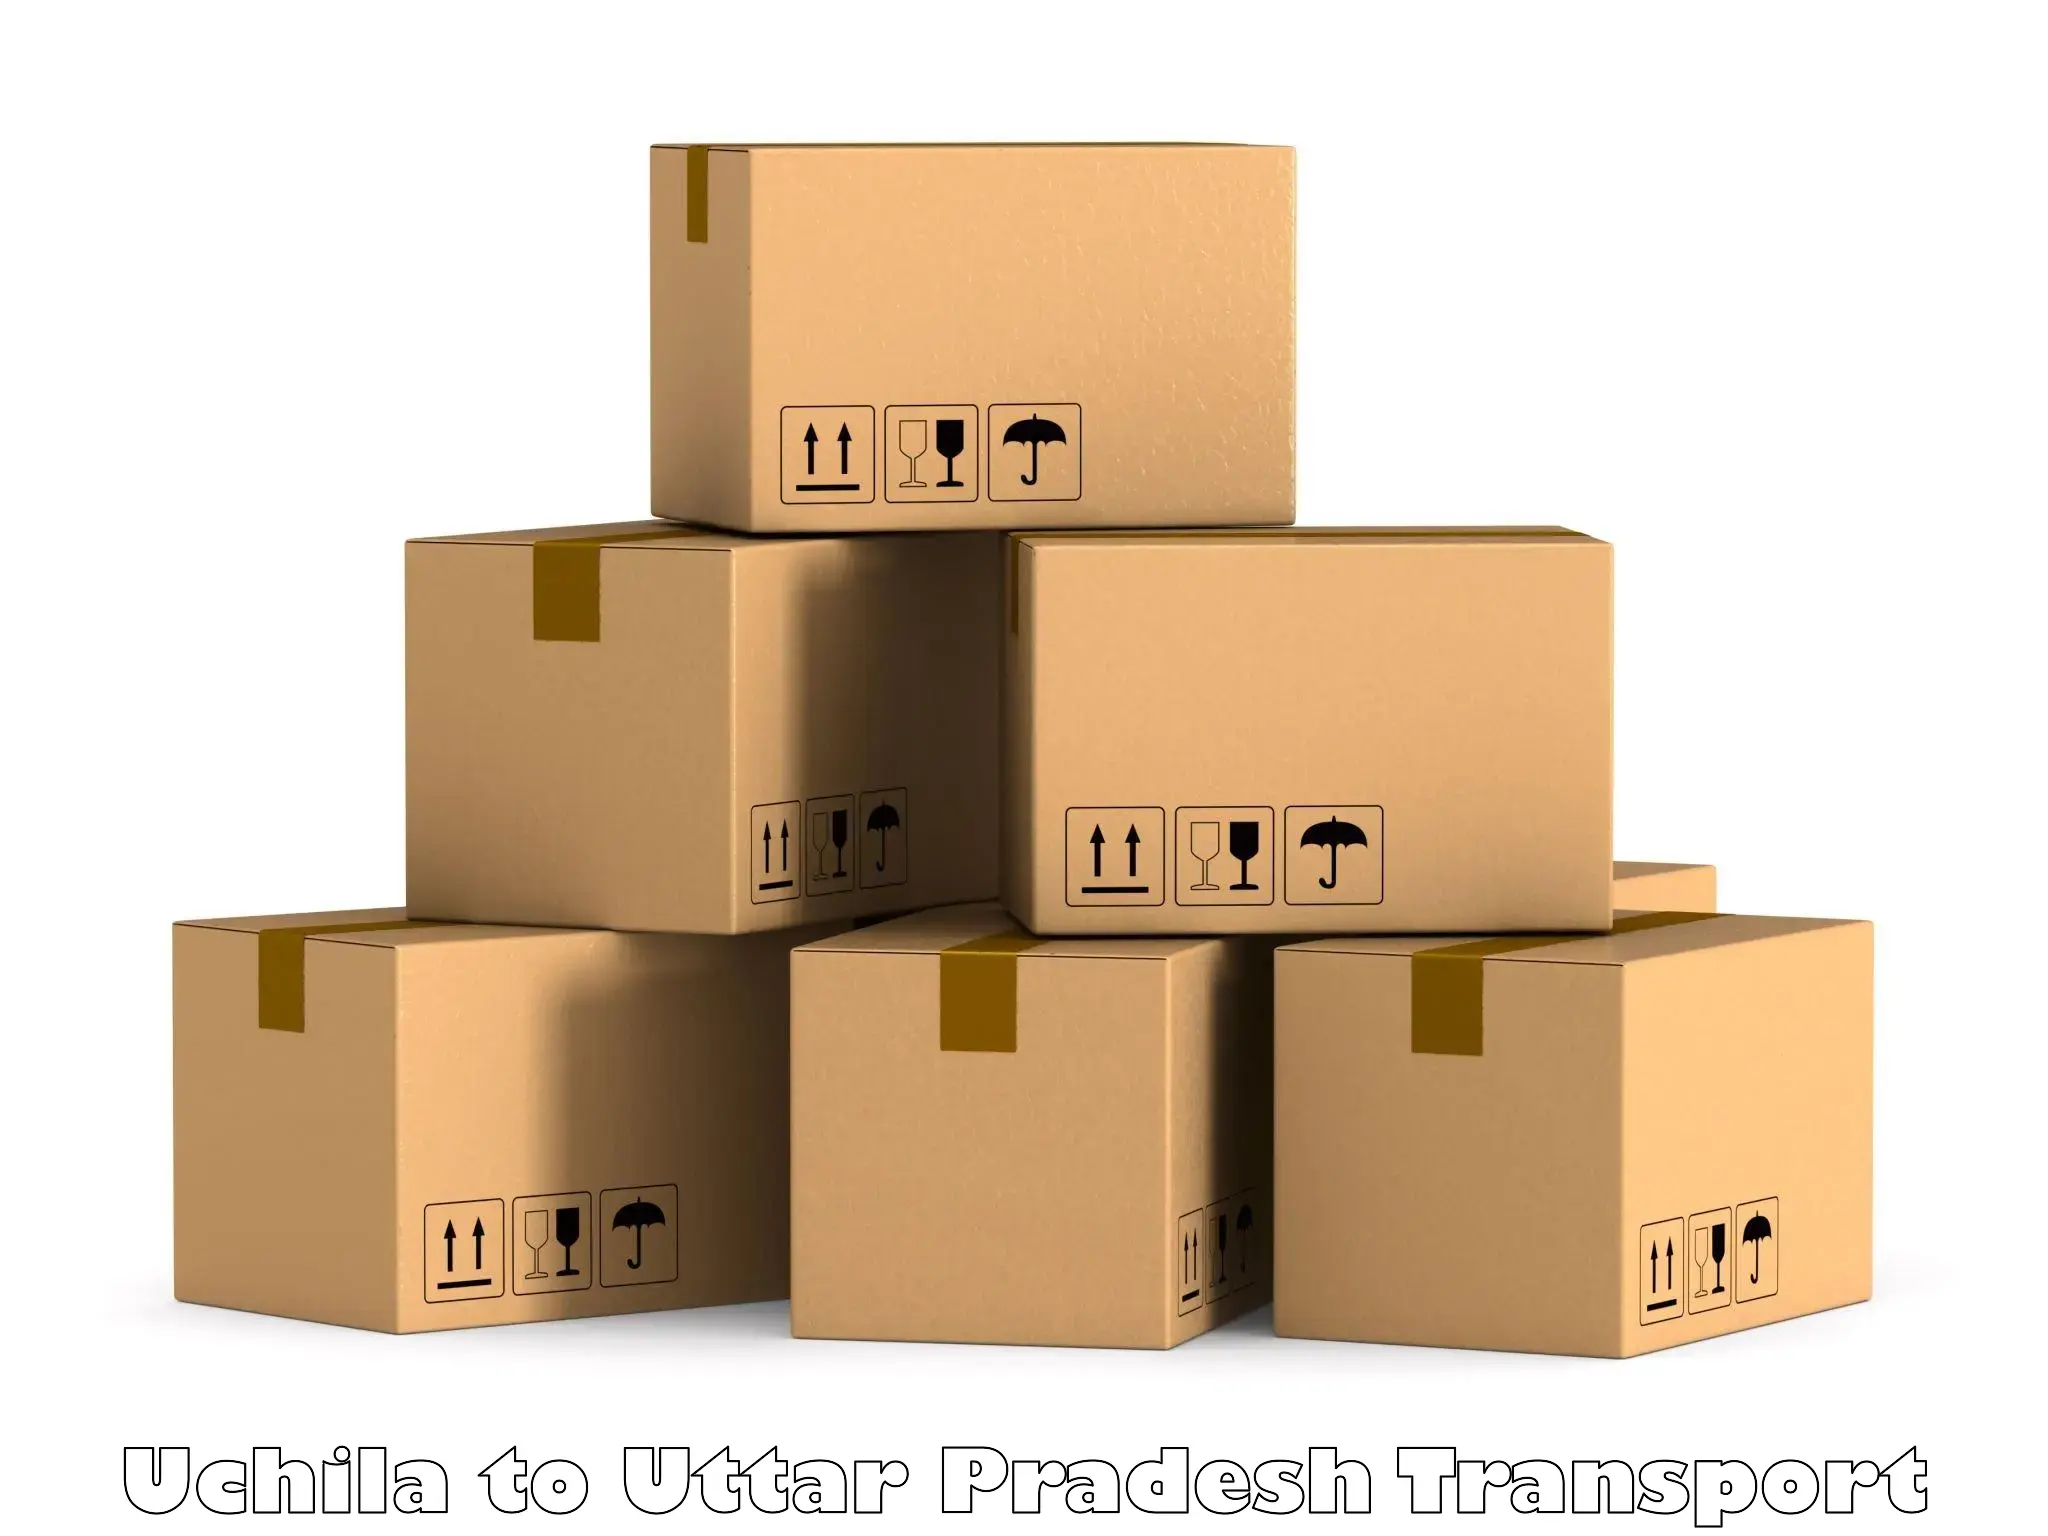 International cargo transportation services Uchila to Mishrikh